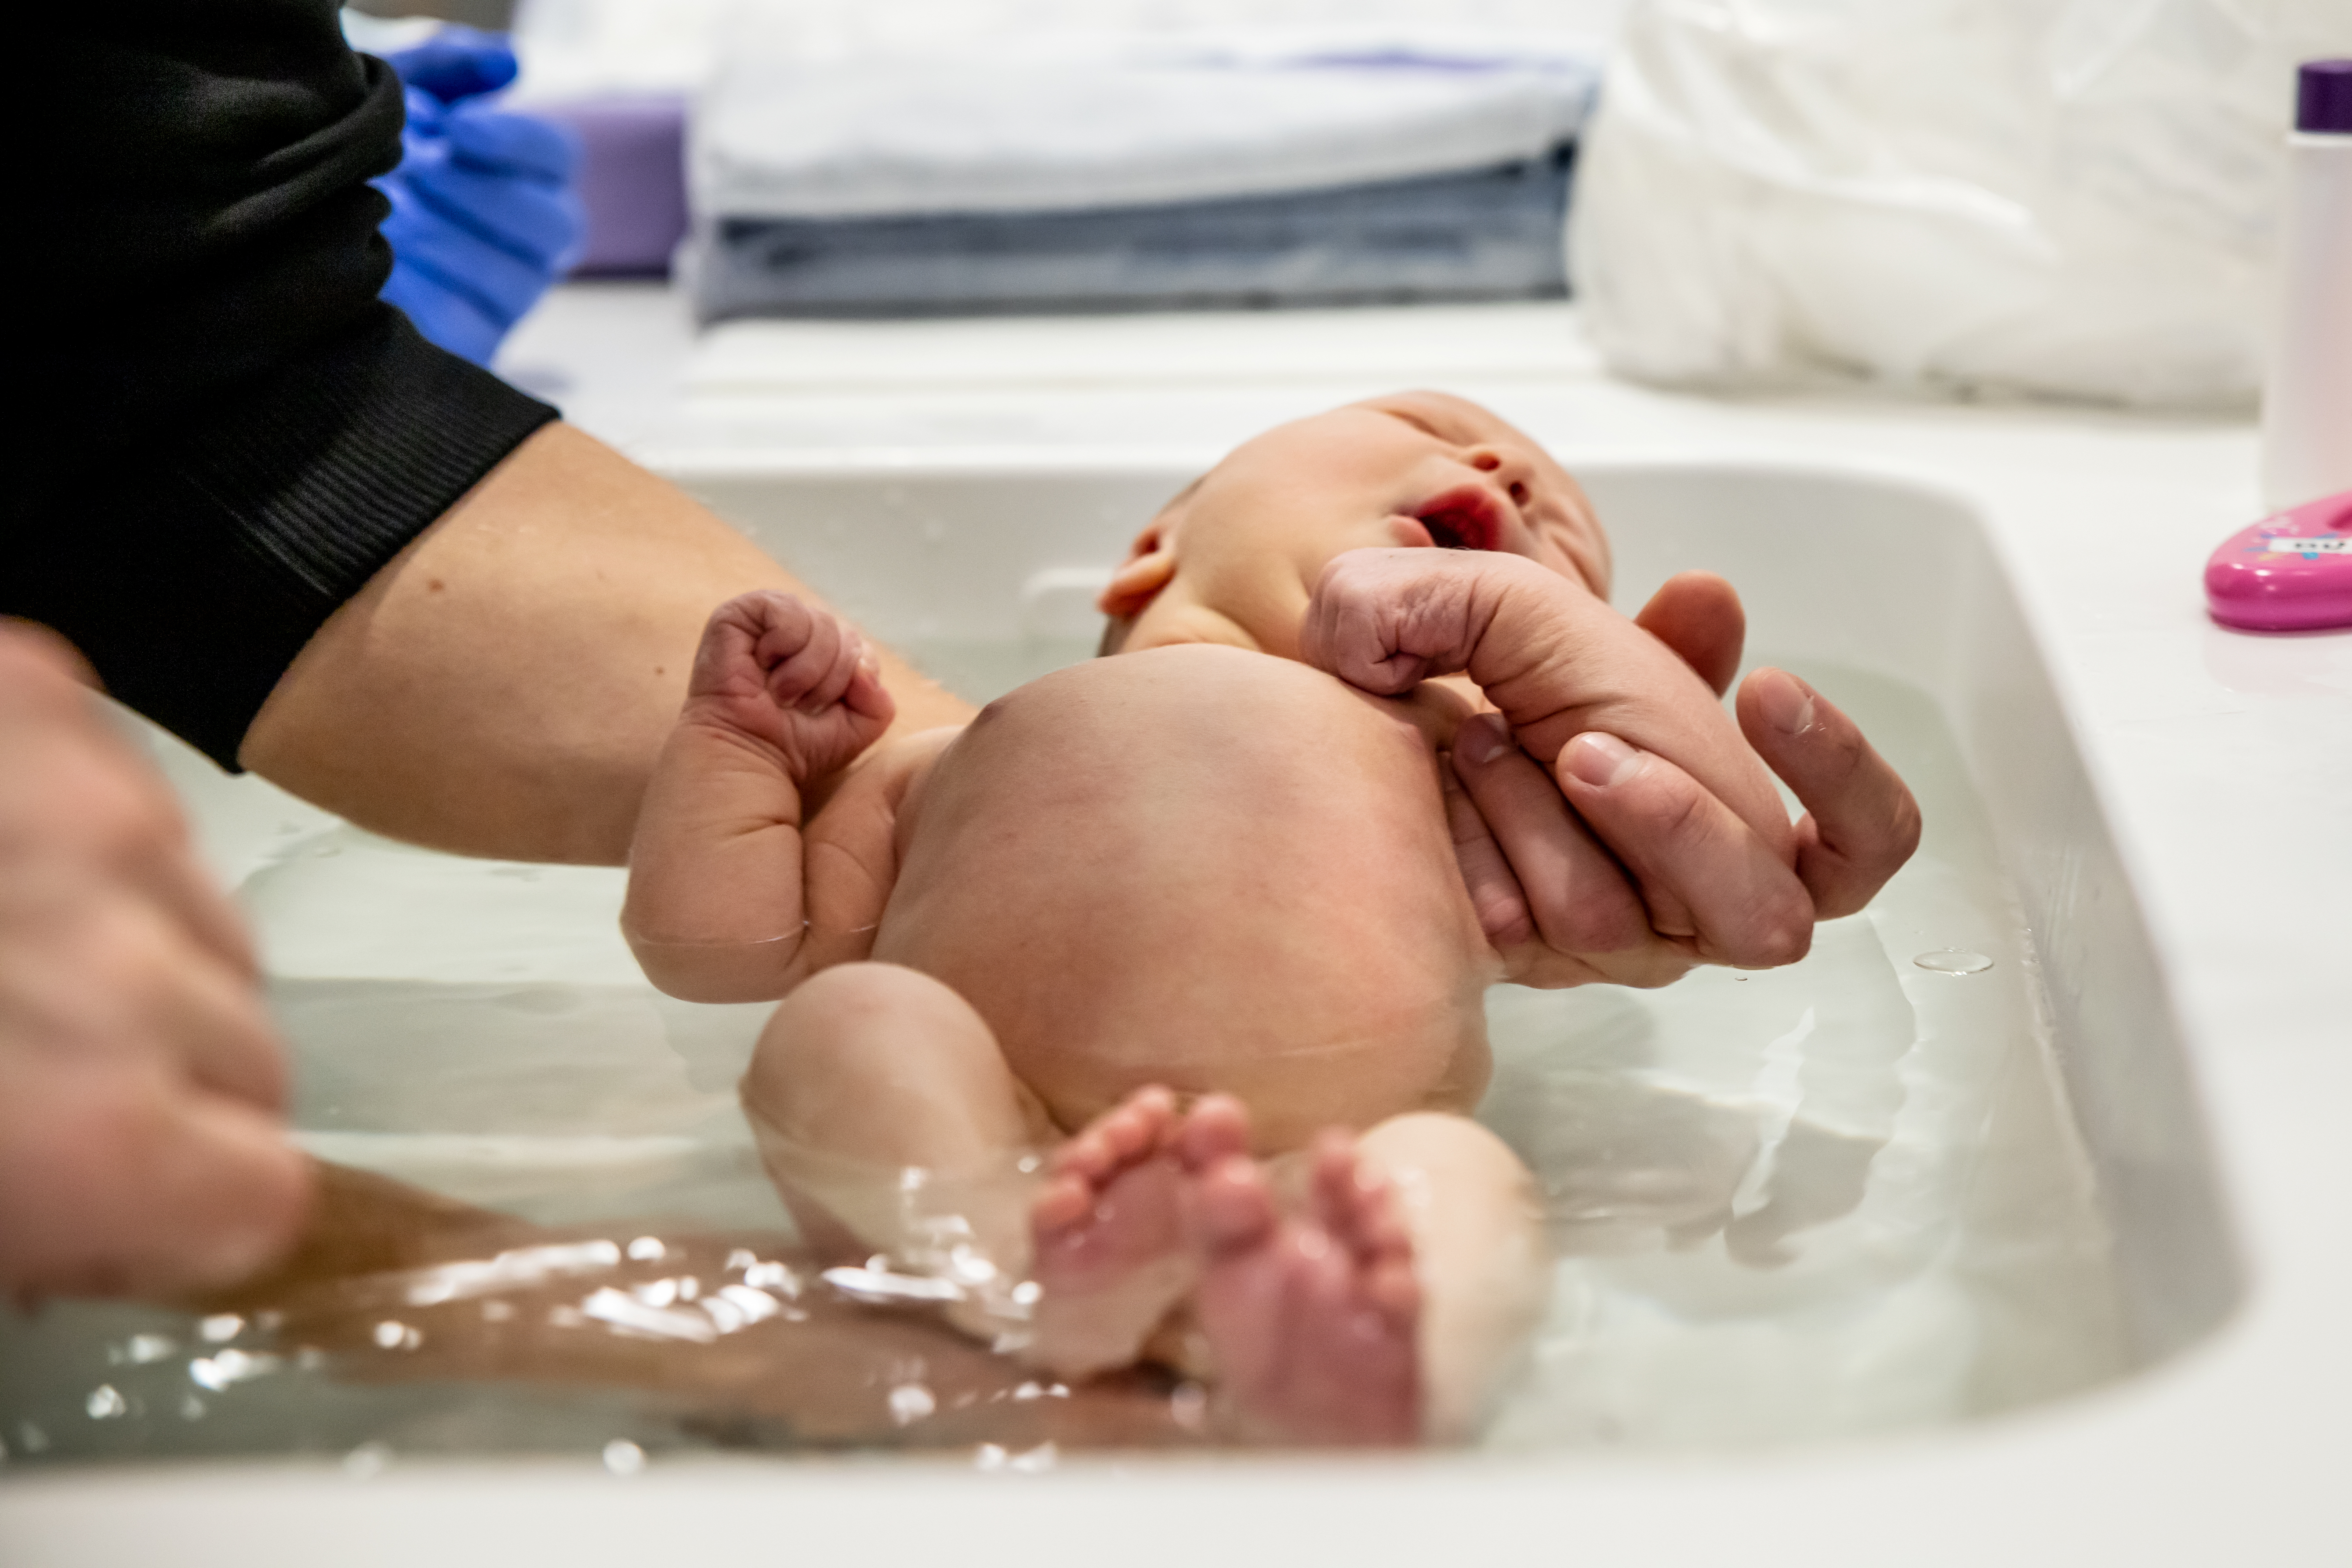 En vuxen person badar ett nyfött barn i en balja.